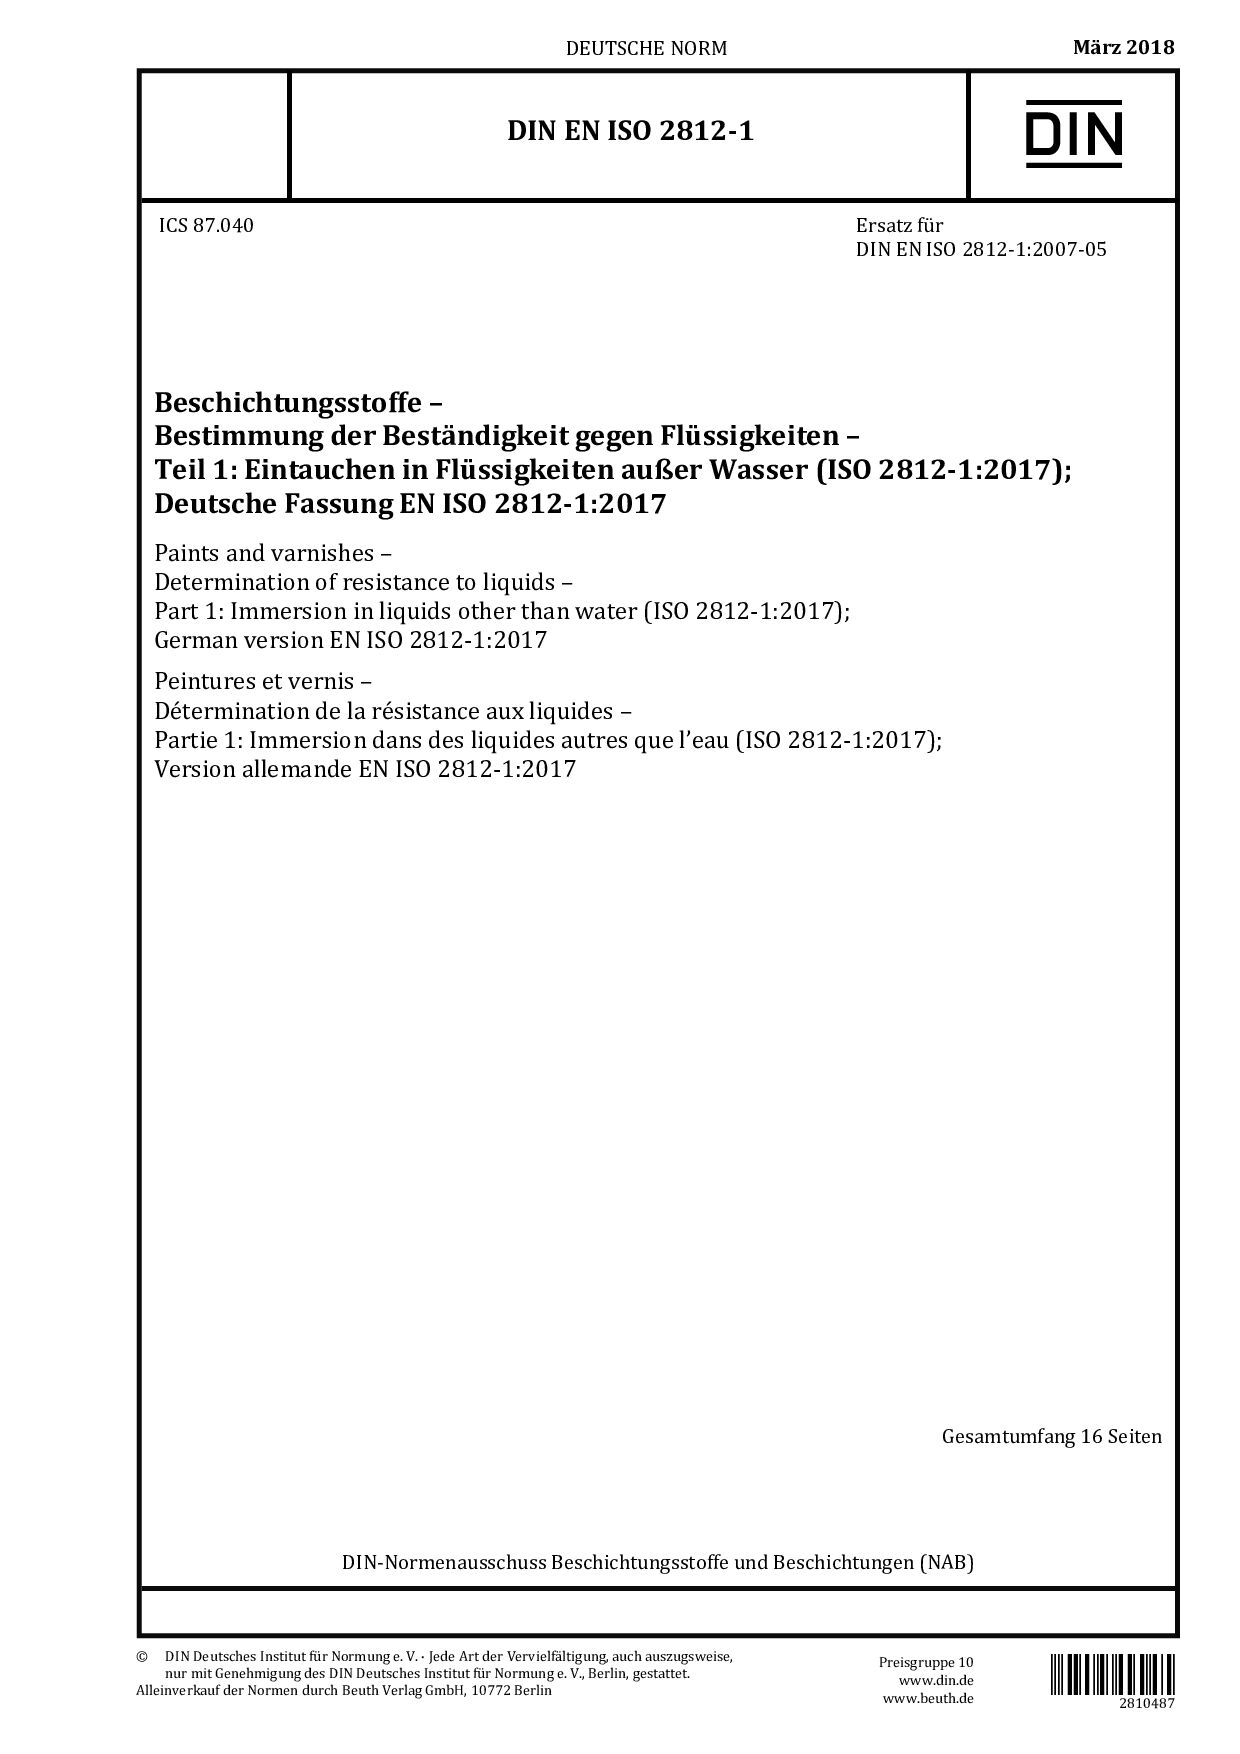 DIN EN ISO 2812-1:2018封面图